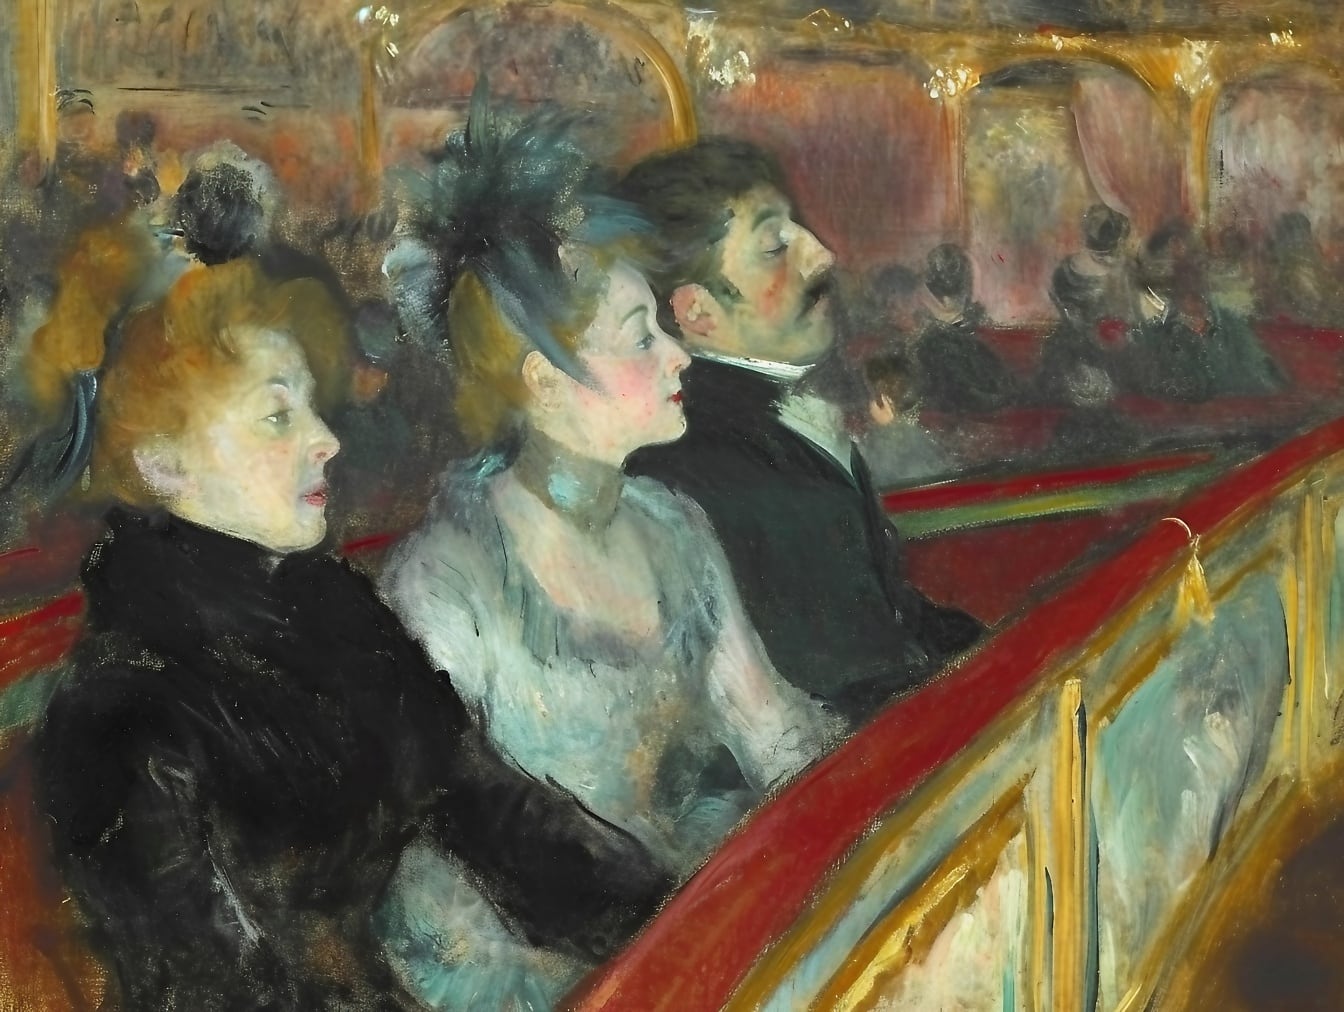 Oliemaleri af en gruppe mennesker, der sidder i en første række teater, der skildrer atmosfæren fra det 19. århundrede